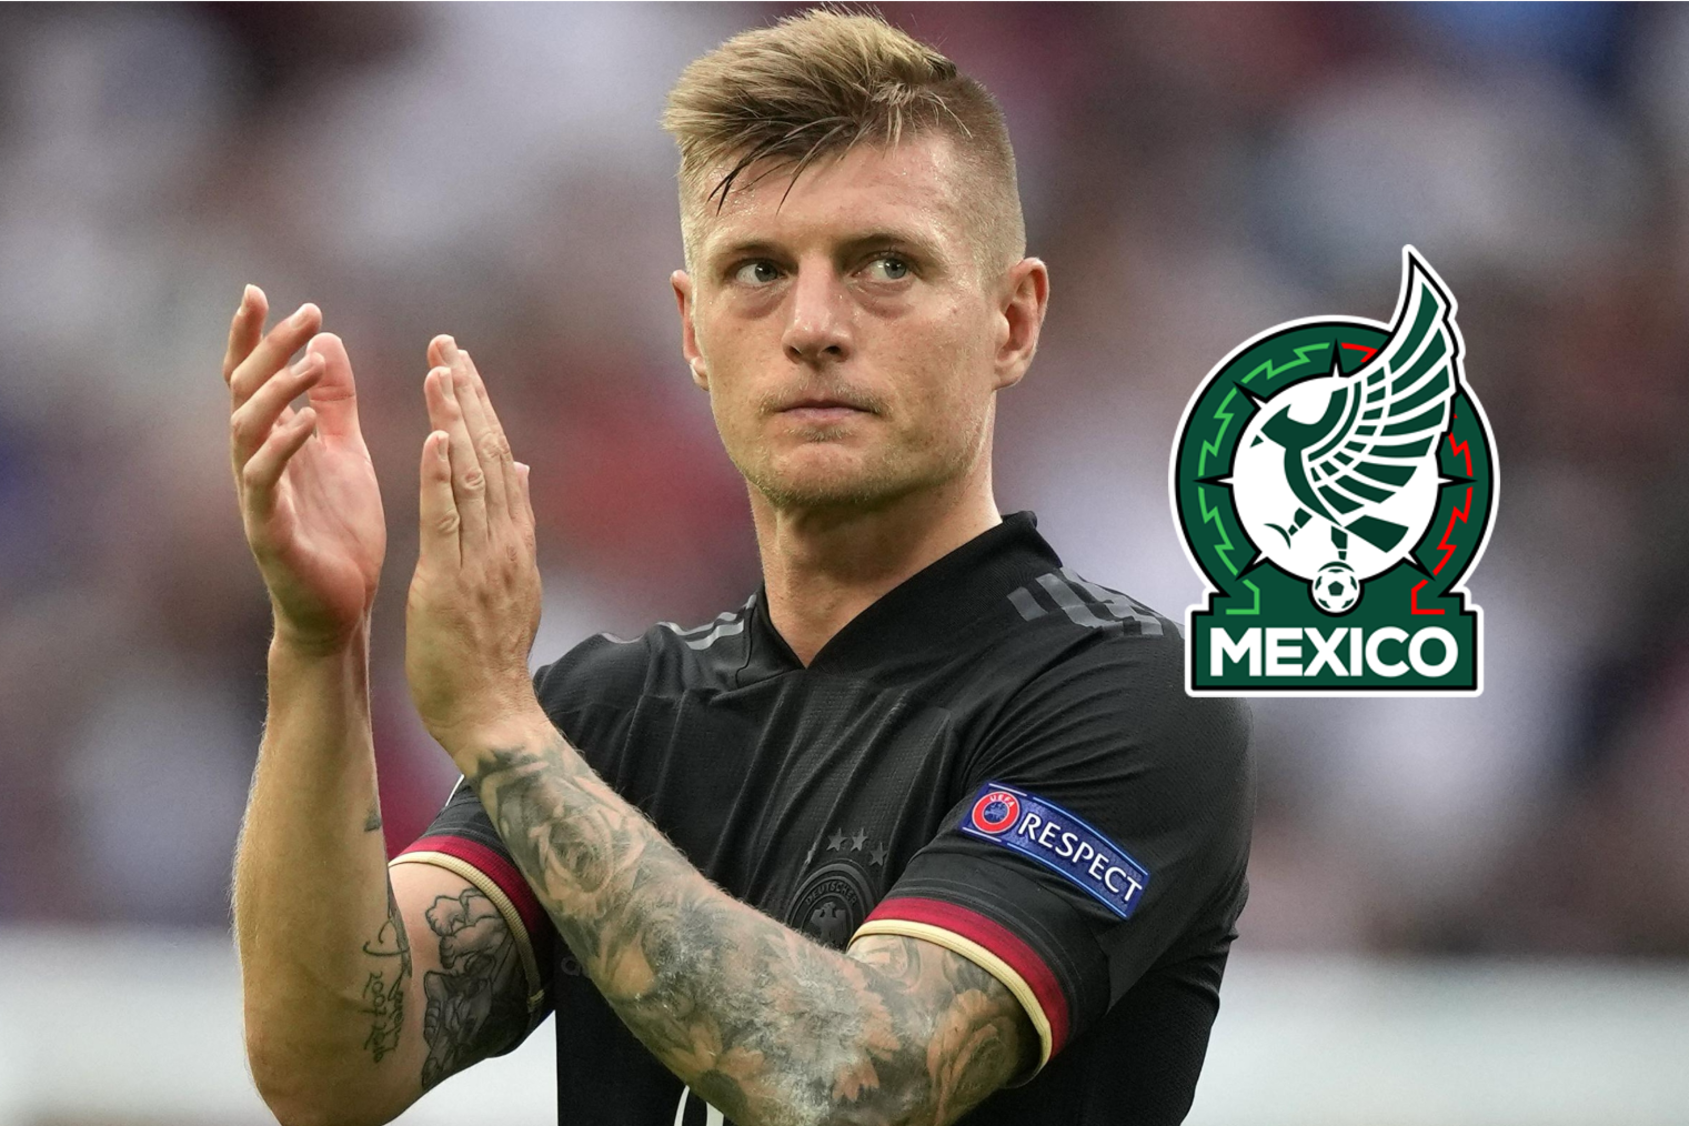 El jugador “más letal” de México, según el crack alemán Toni Kroos